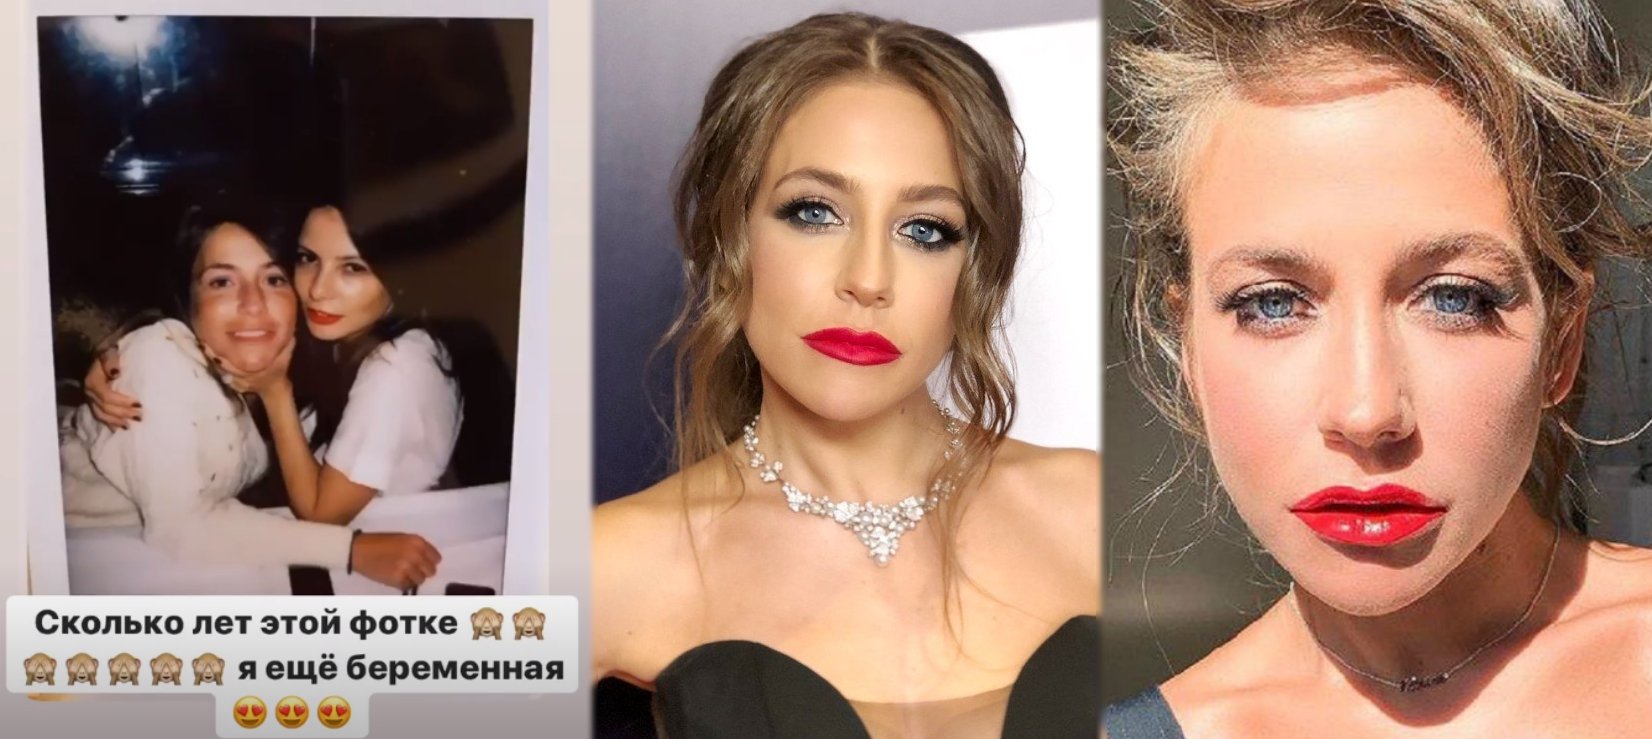 Барановская Юлия до и после пластики фото как выглядела